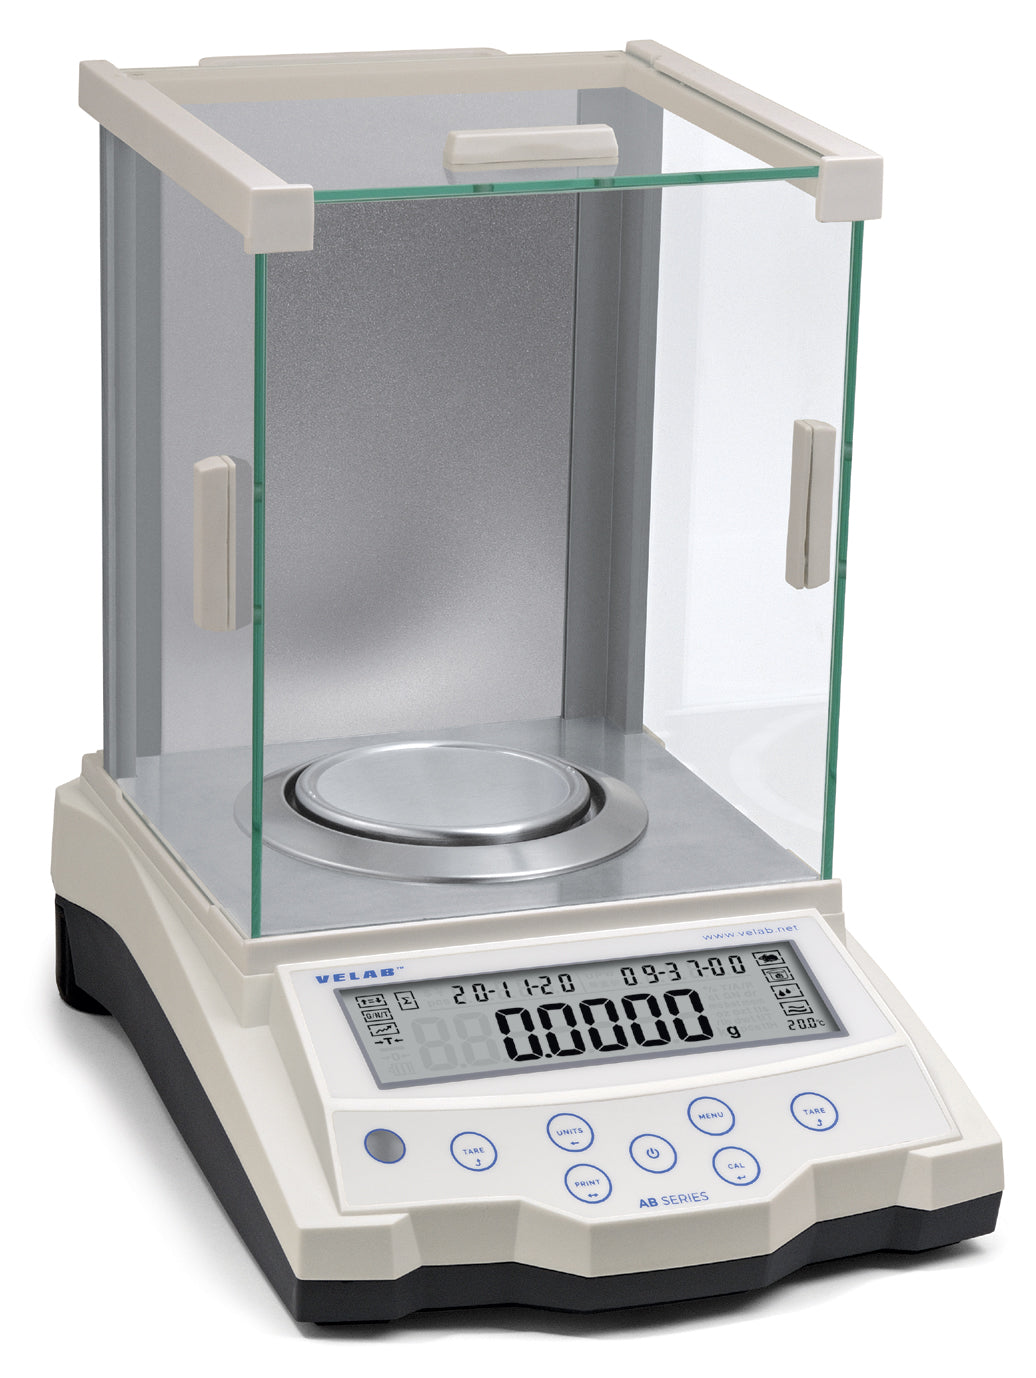 Genuino Calor colateral VE-210 Balanza electrónica analítica de precisión – Laboteca